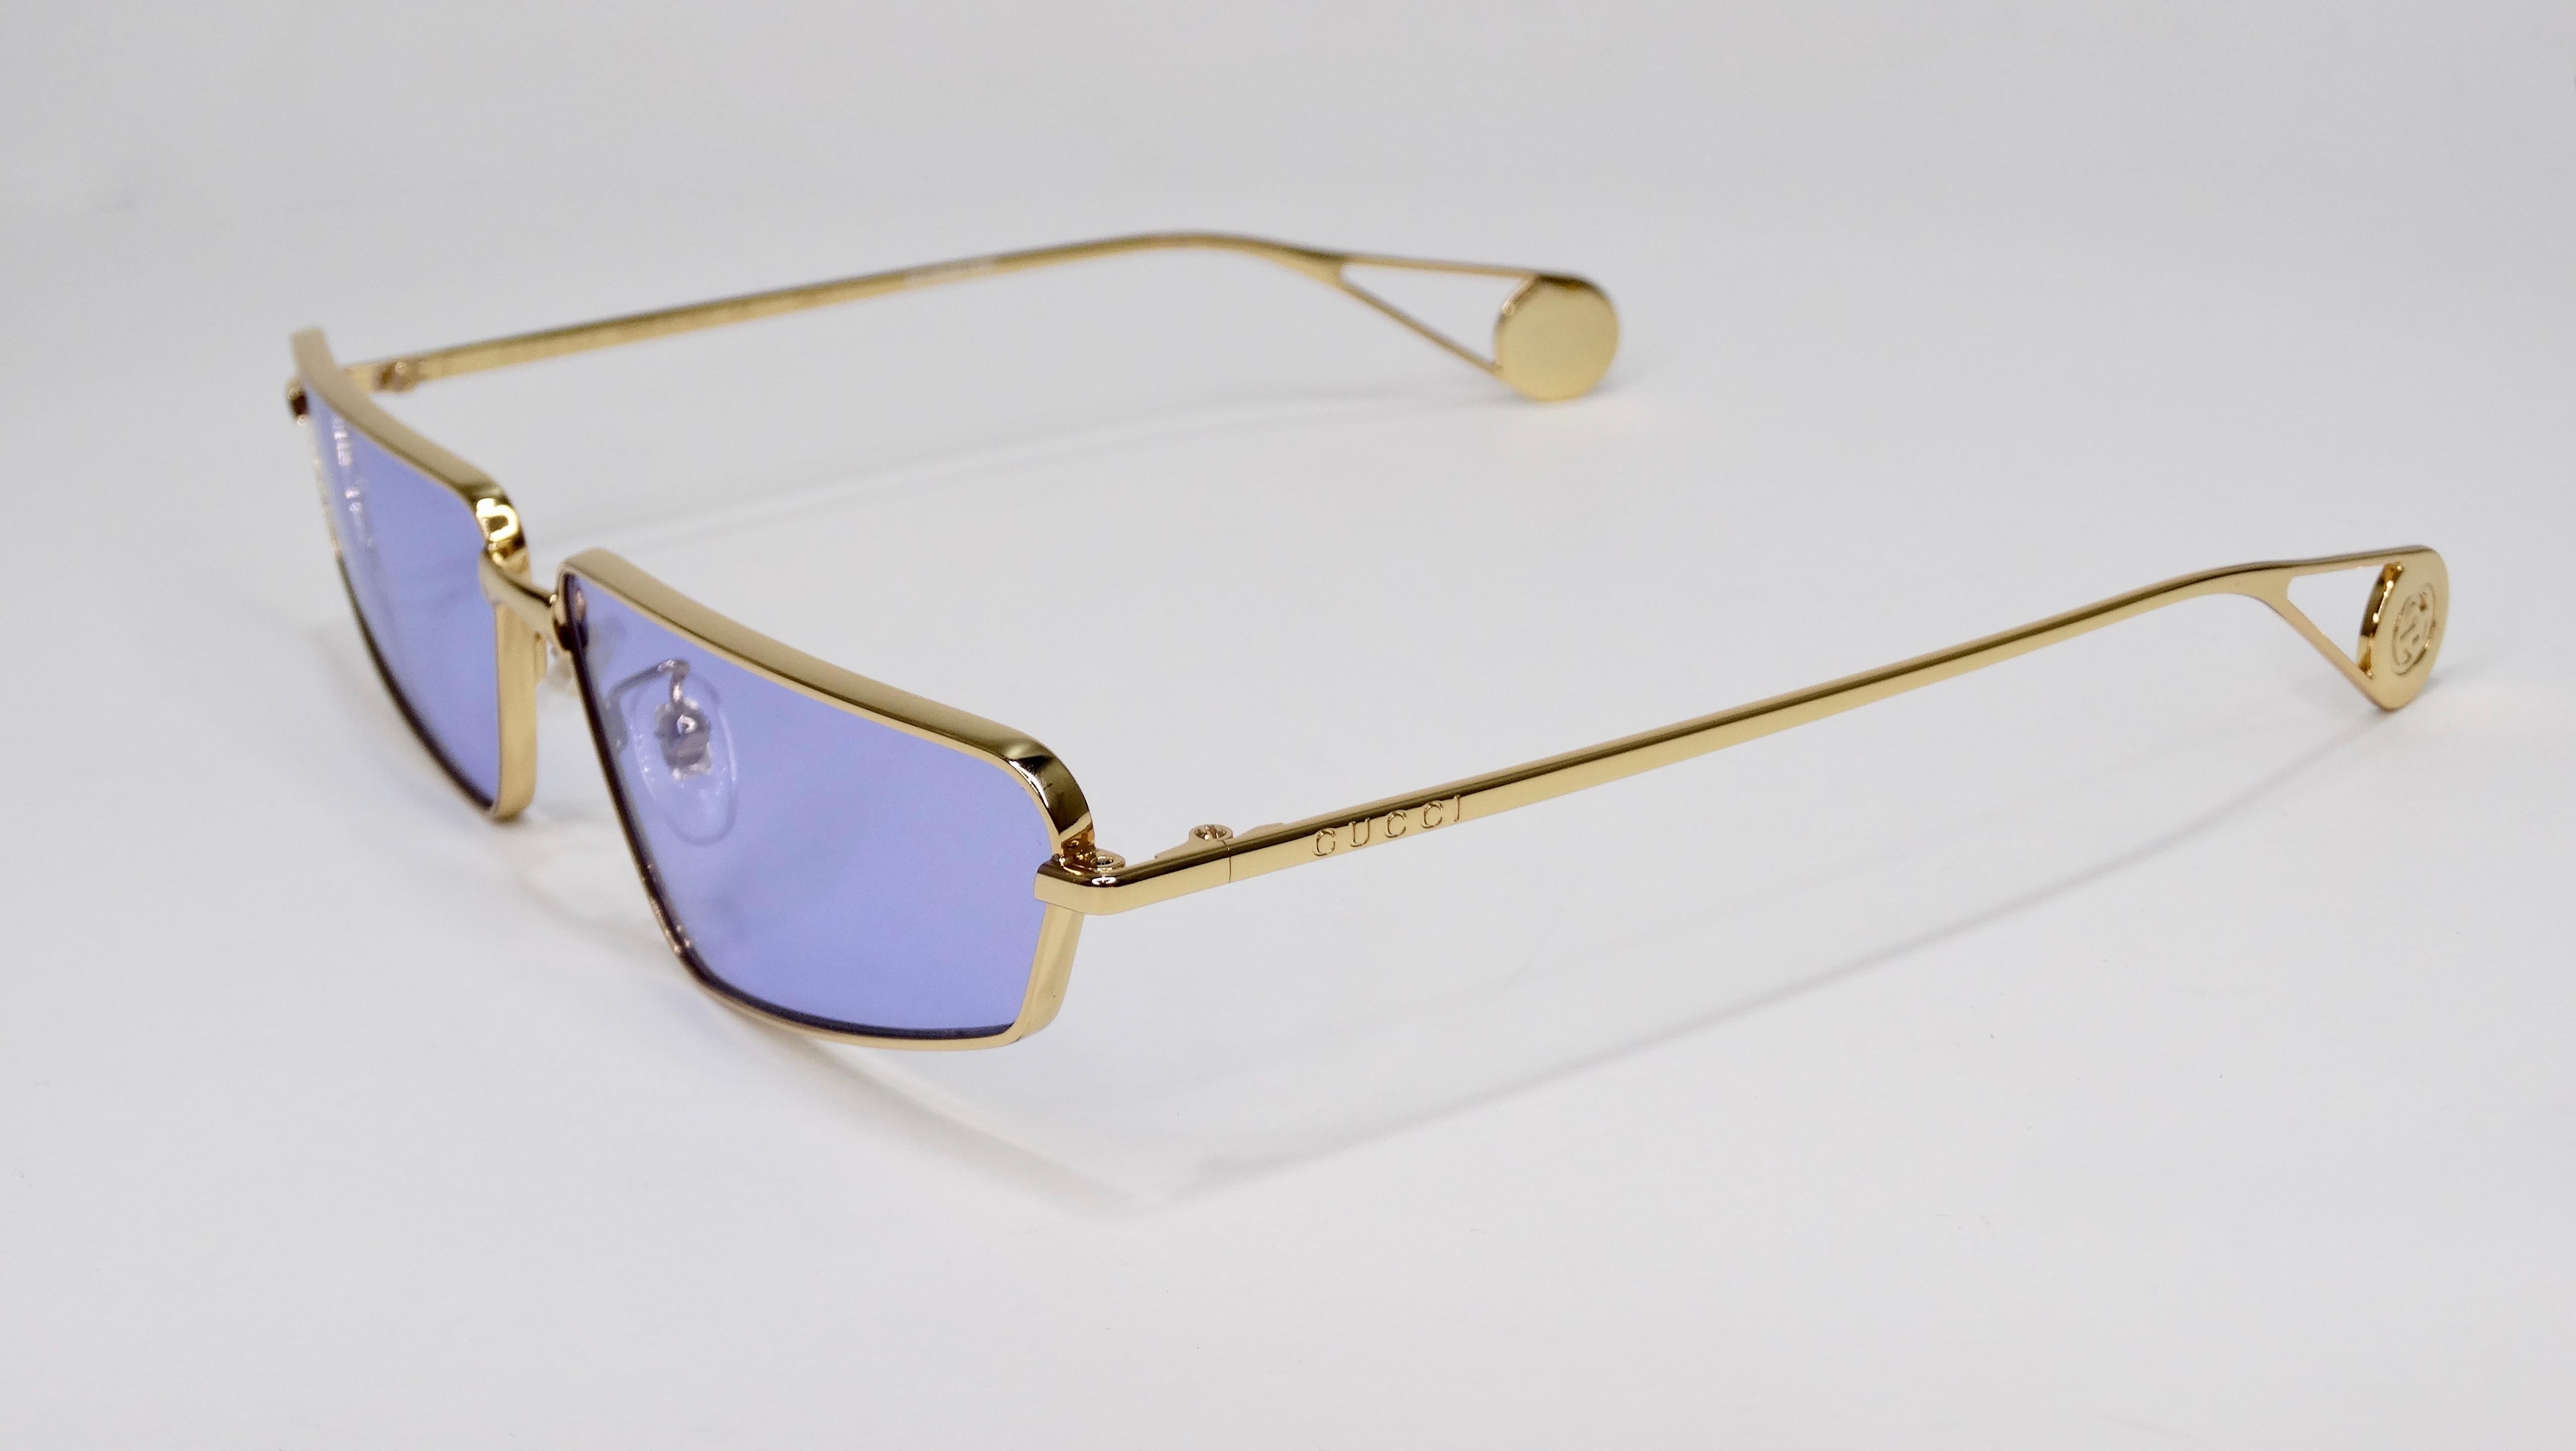 Achetez ces lunettes de soleil Gucci ! Circa recent 2000s, ces lunettes de soleil edgy présentent une monture cat eye dorée avec des verres bleus. Livré avec son étui d'origine. Base des armoiries embossée avec le logo GG original emboîté. Parfait